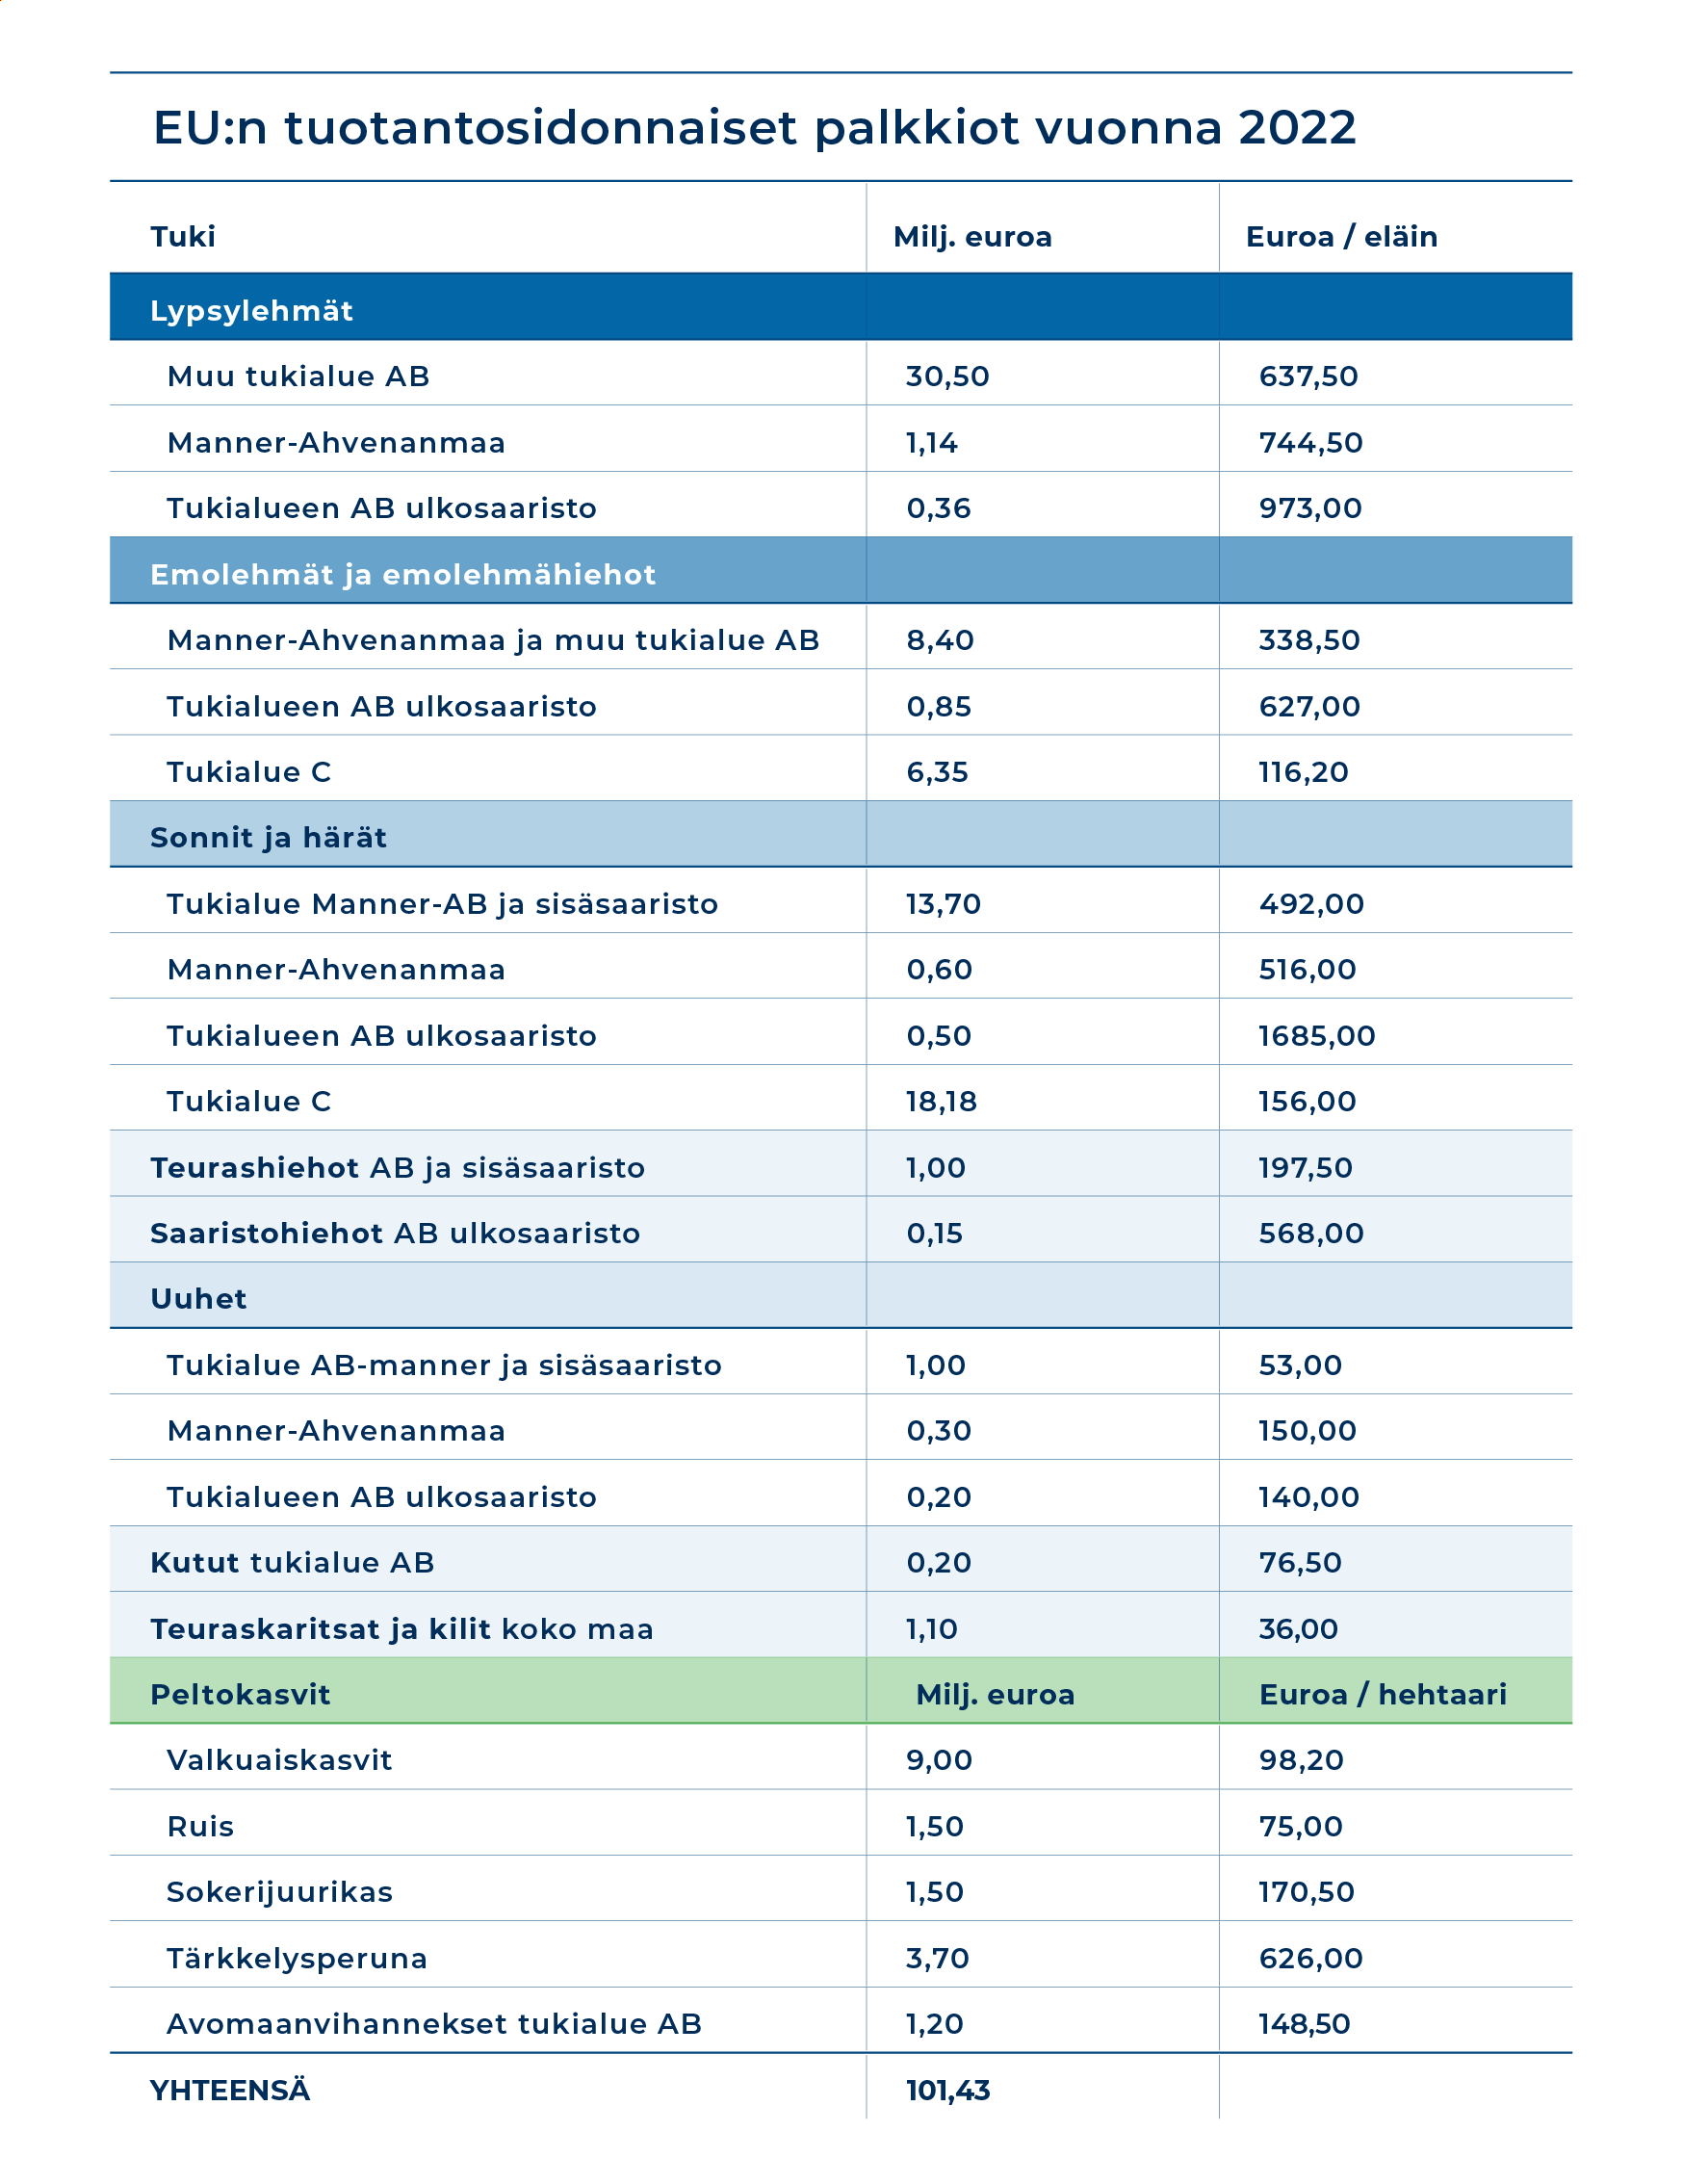 EU:n tuotantosidonnaiset palkkiot vuonna 2022